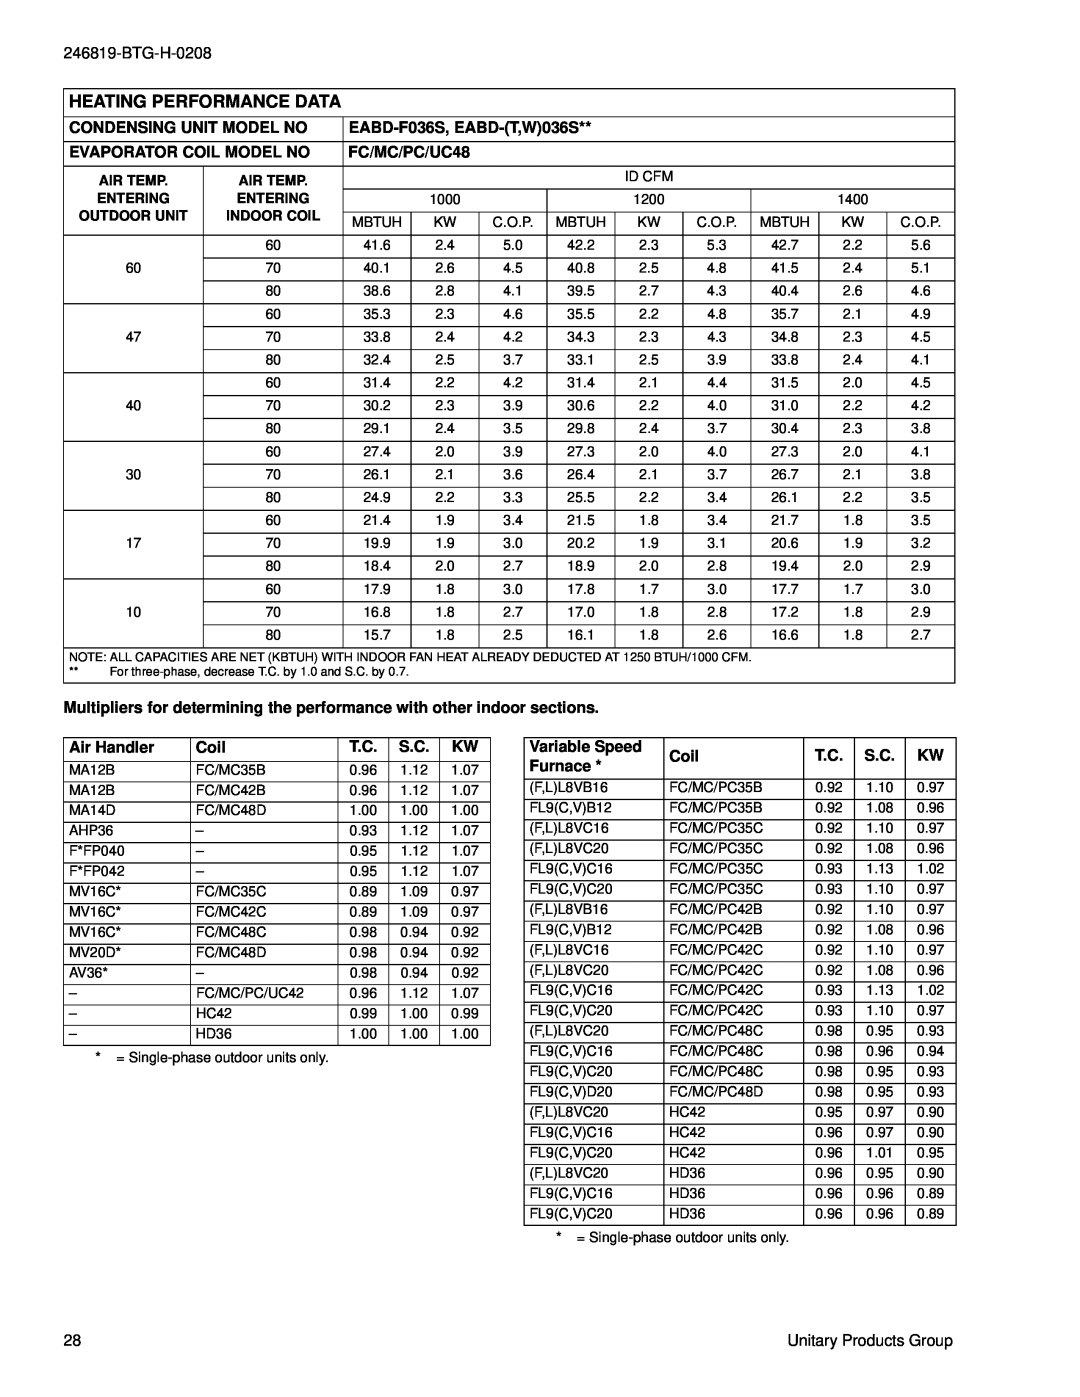 York E*BD-F018 THRU 060, W)036 THRU 060, E*BD-(T warranty Heating Performance Data, Id Cfm 